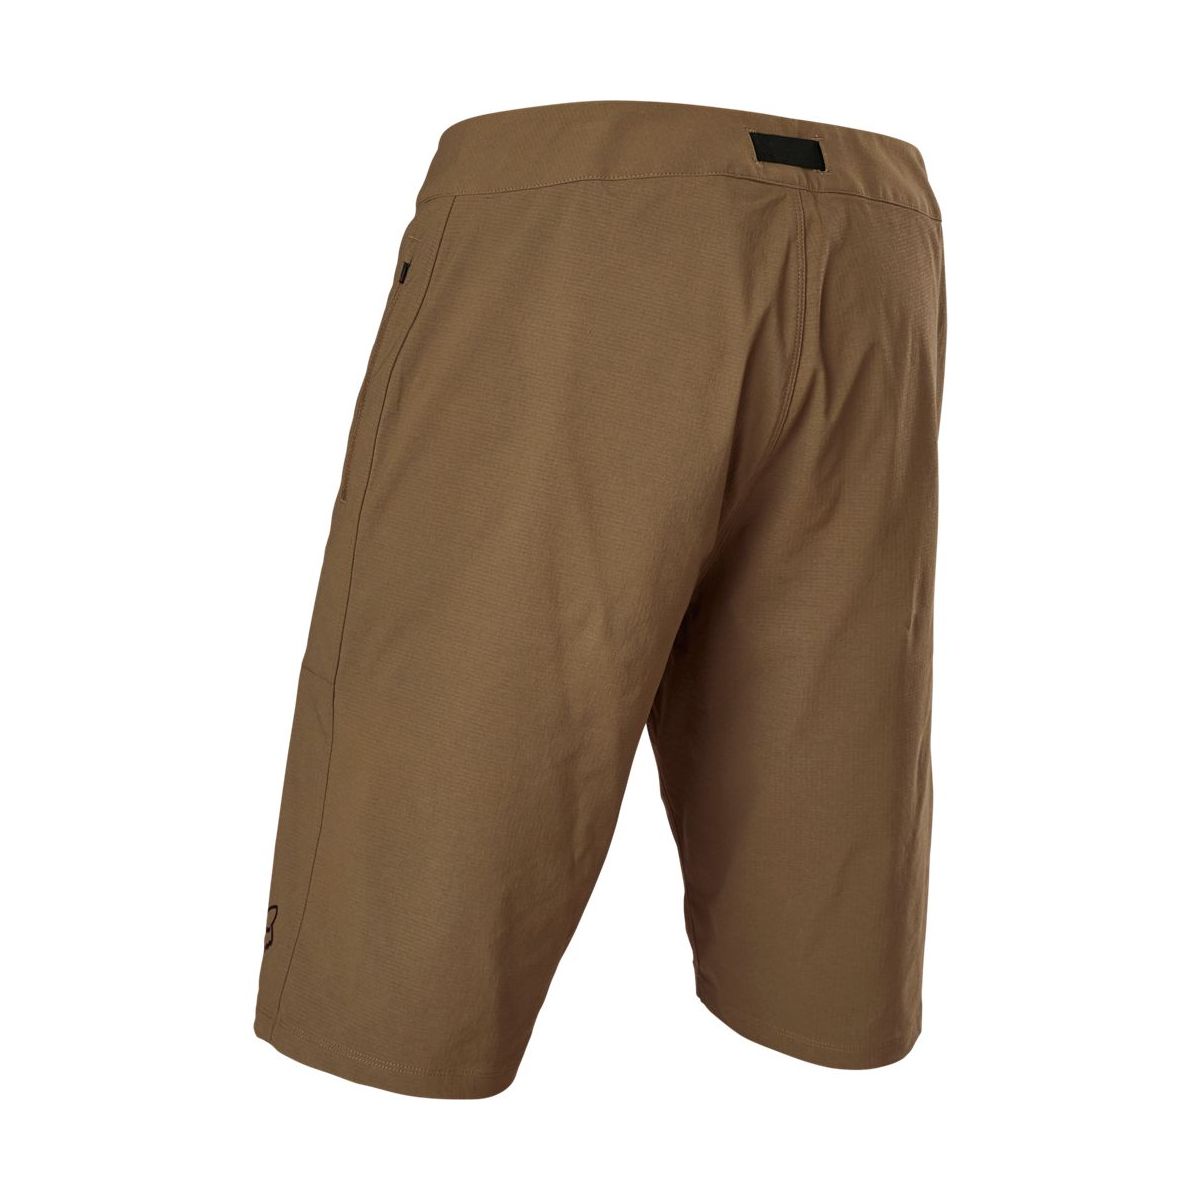 Pantalón corto Enduro MTB Fox Ranger con badana color marrón